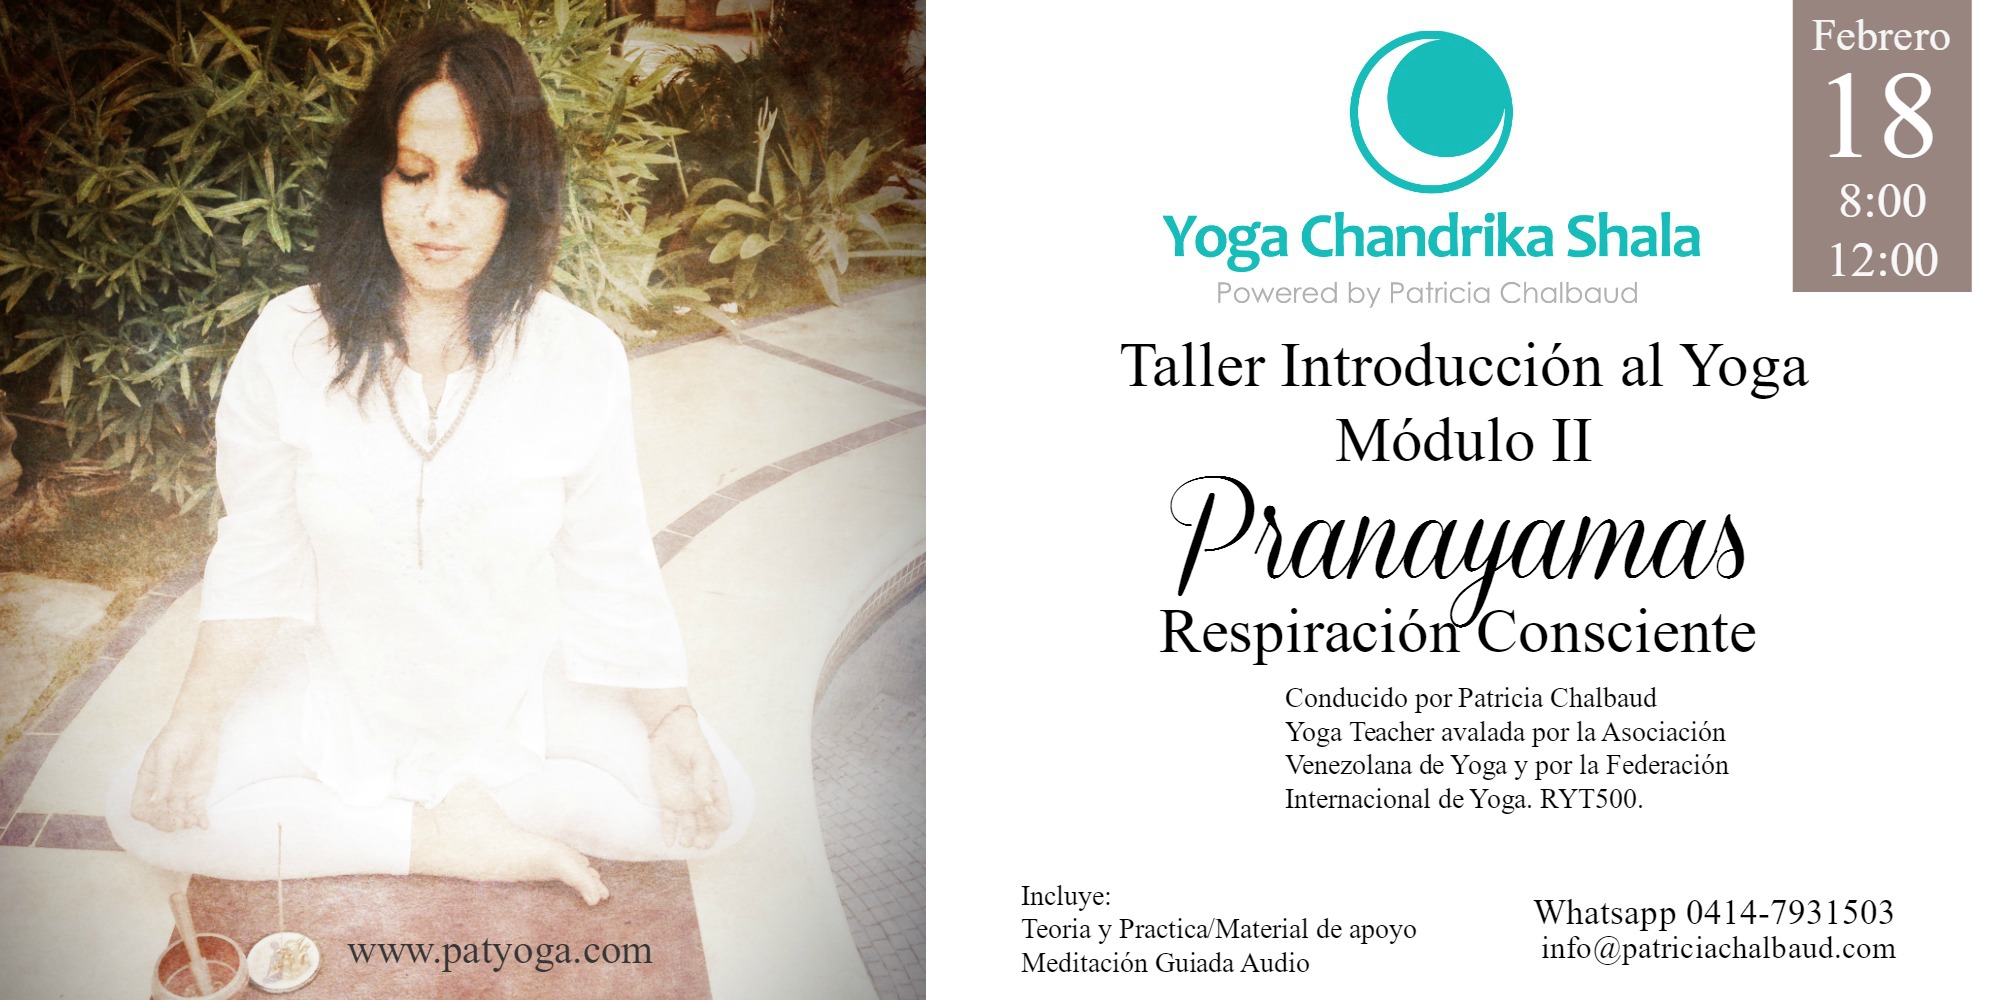 Taller Introducción al Yoga: Módulo II Pranayamas